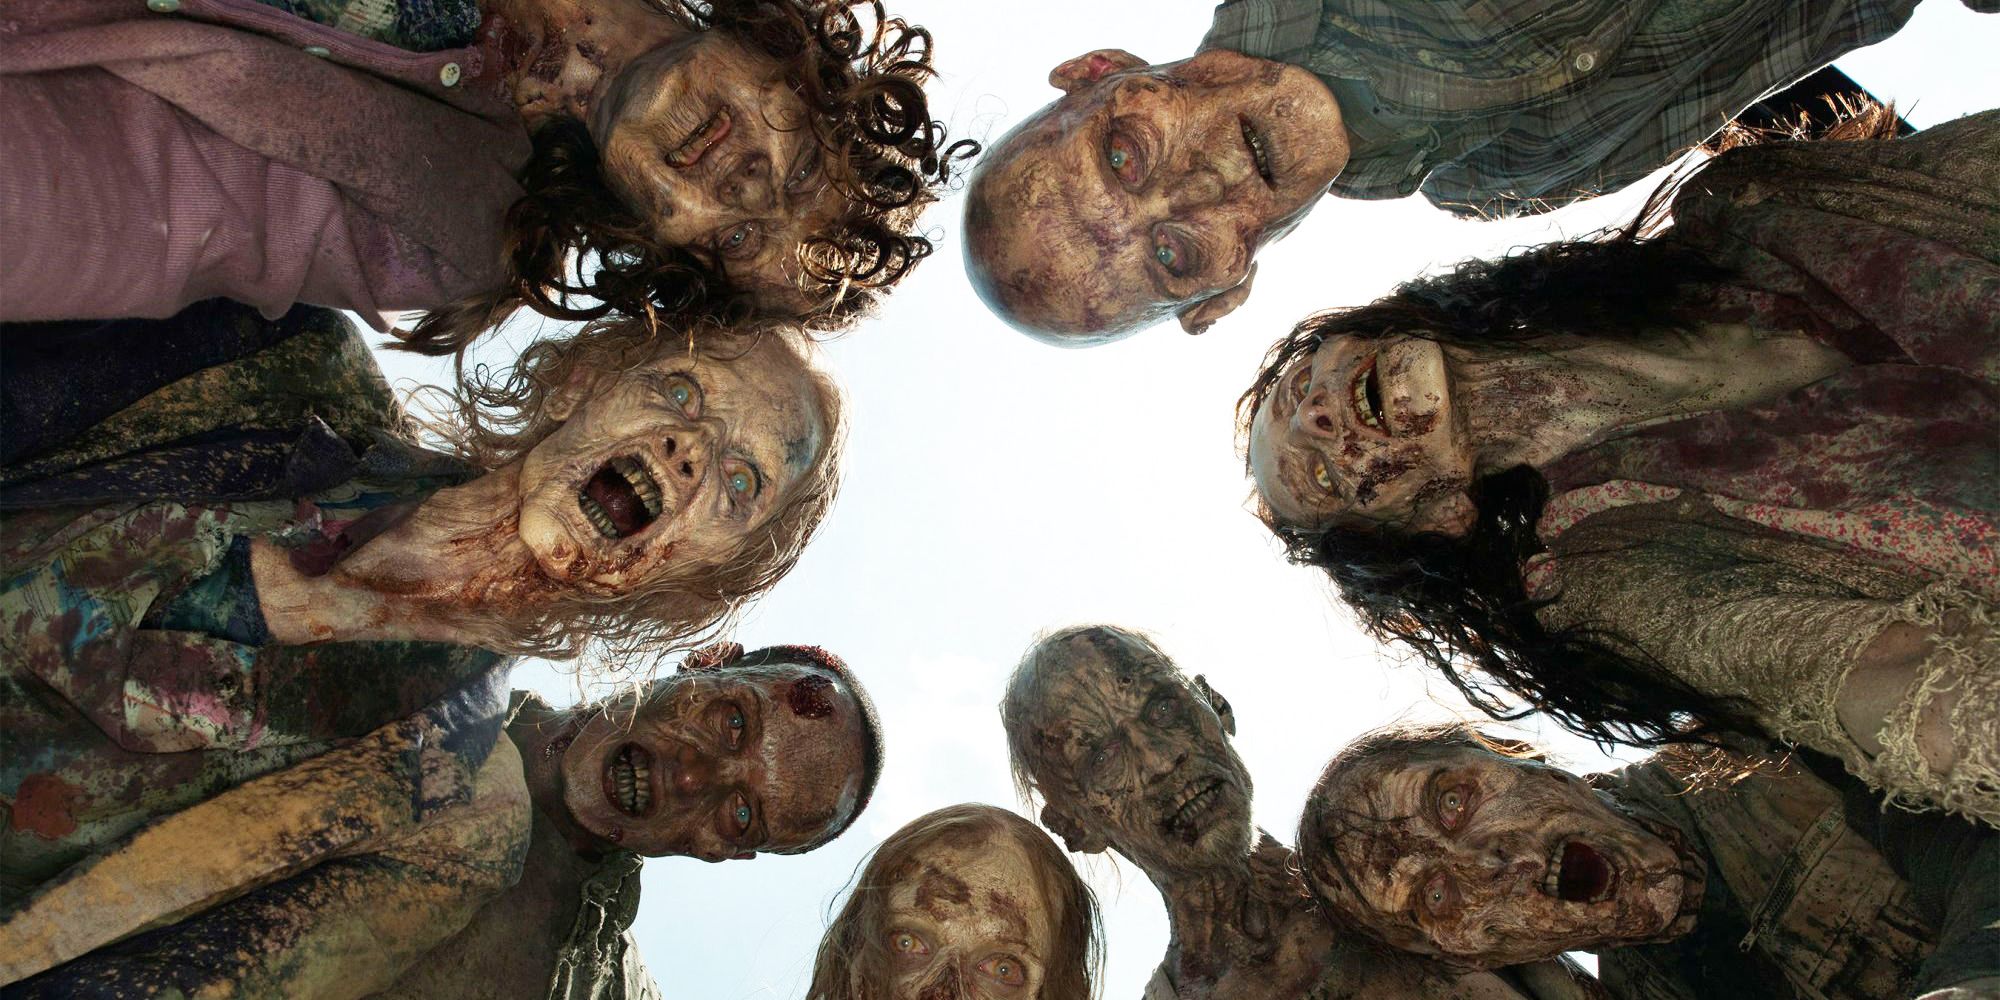 The Walking Dead - Walkers aka Zombies